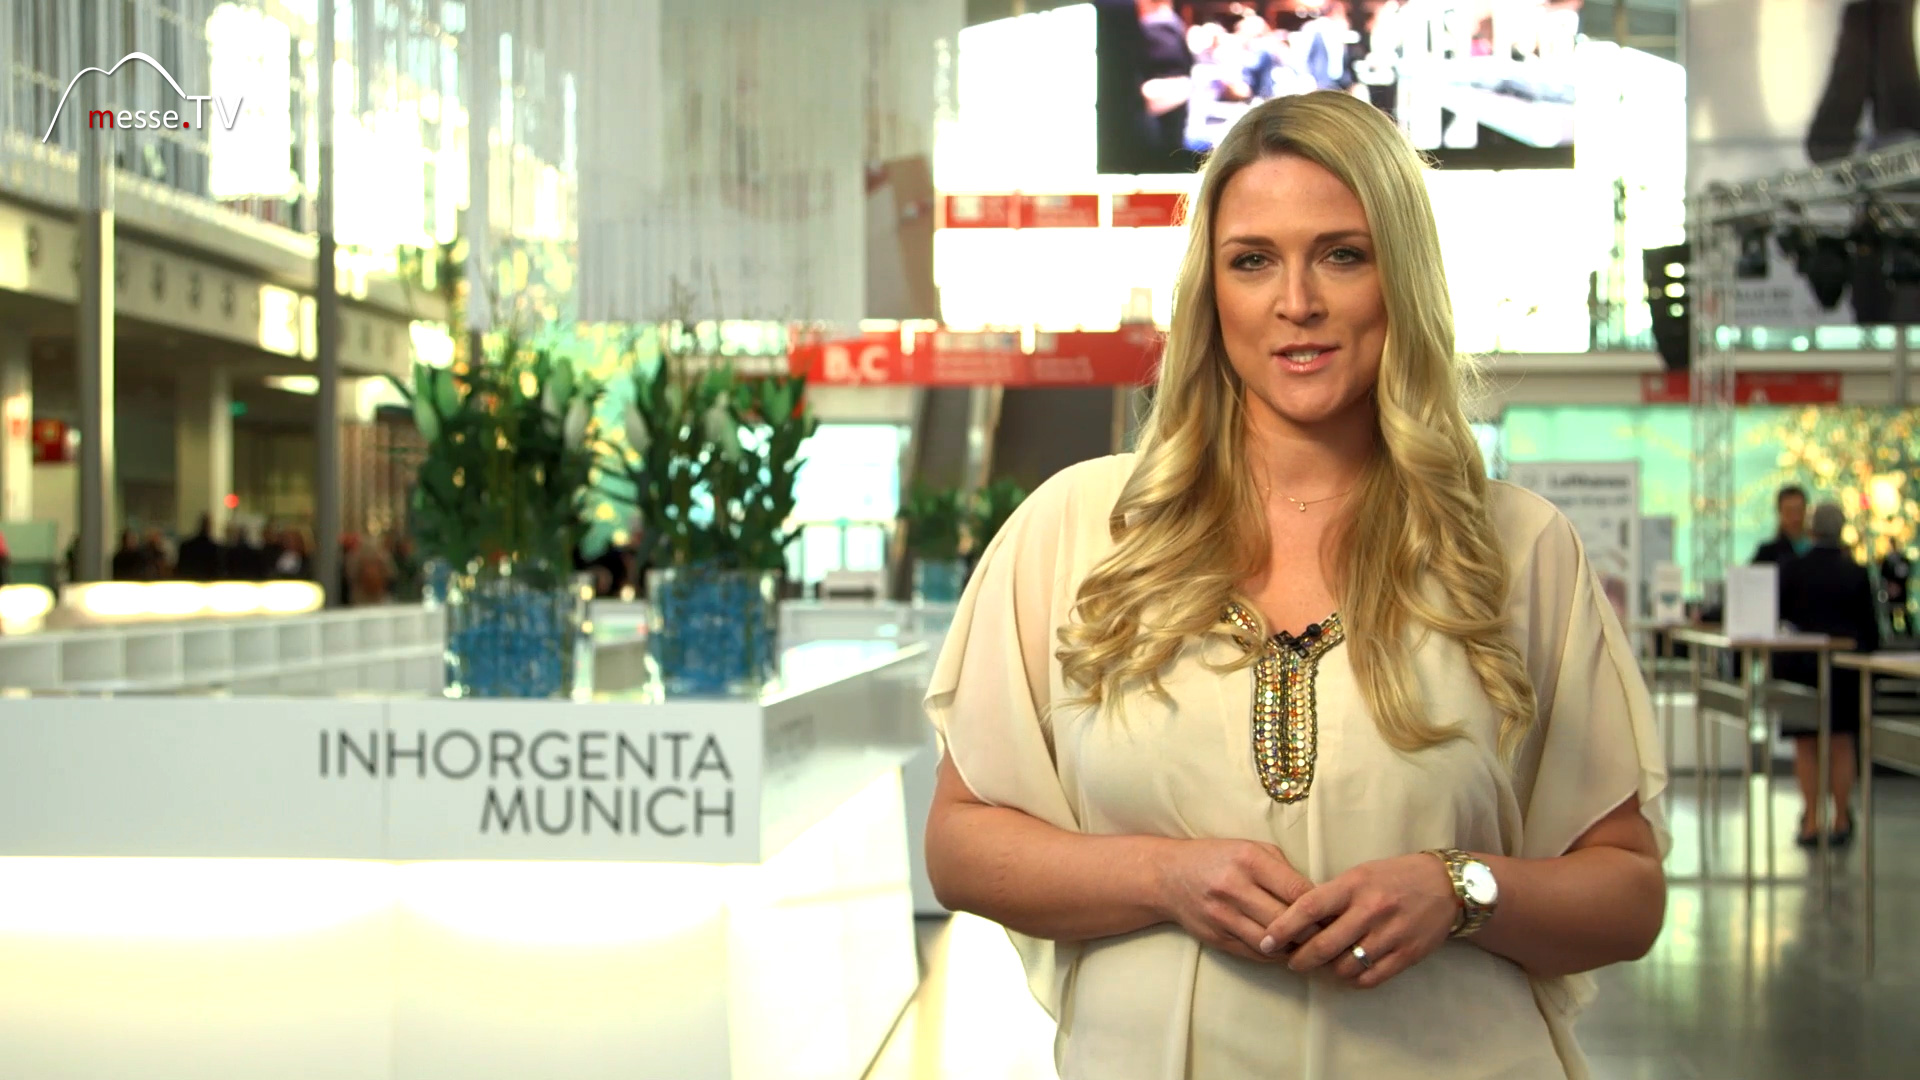 MesseTV Berichterstattung Inhorgenta 2016 Messe München